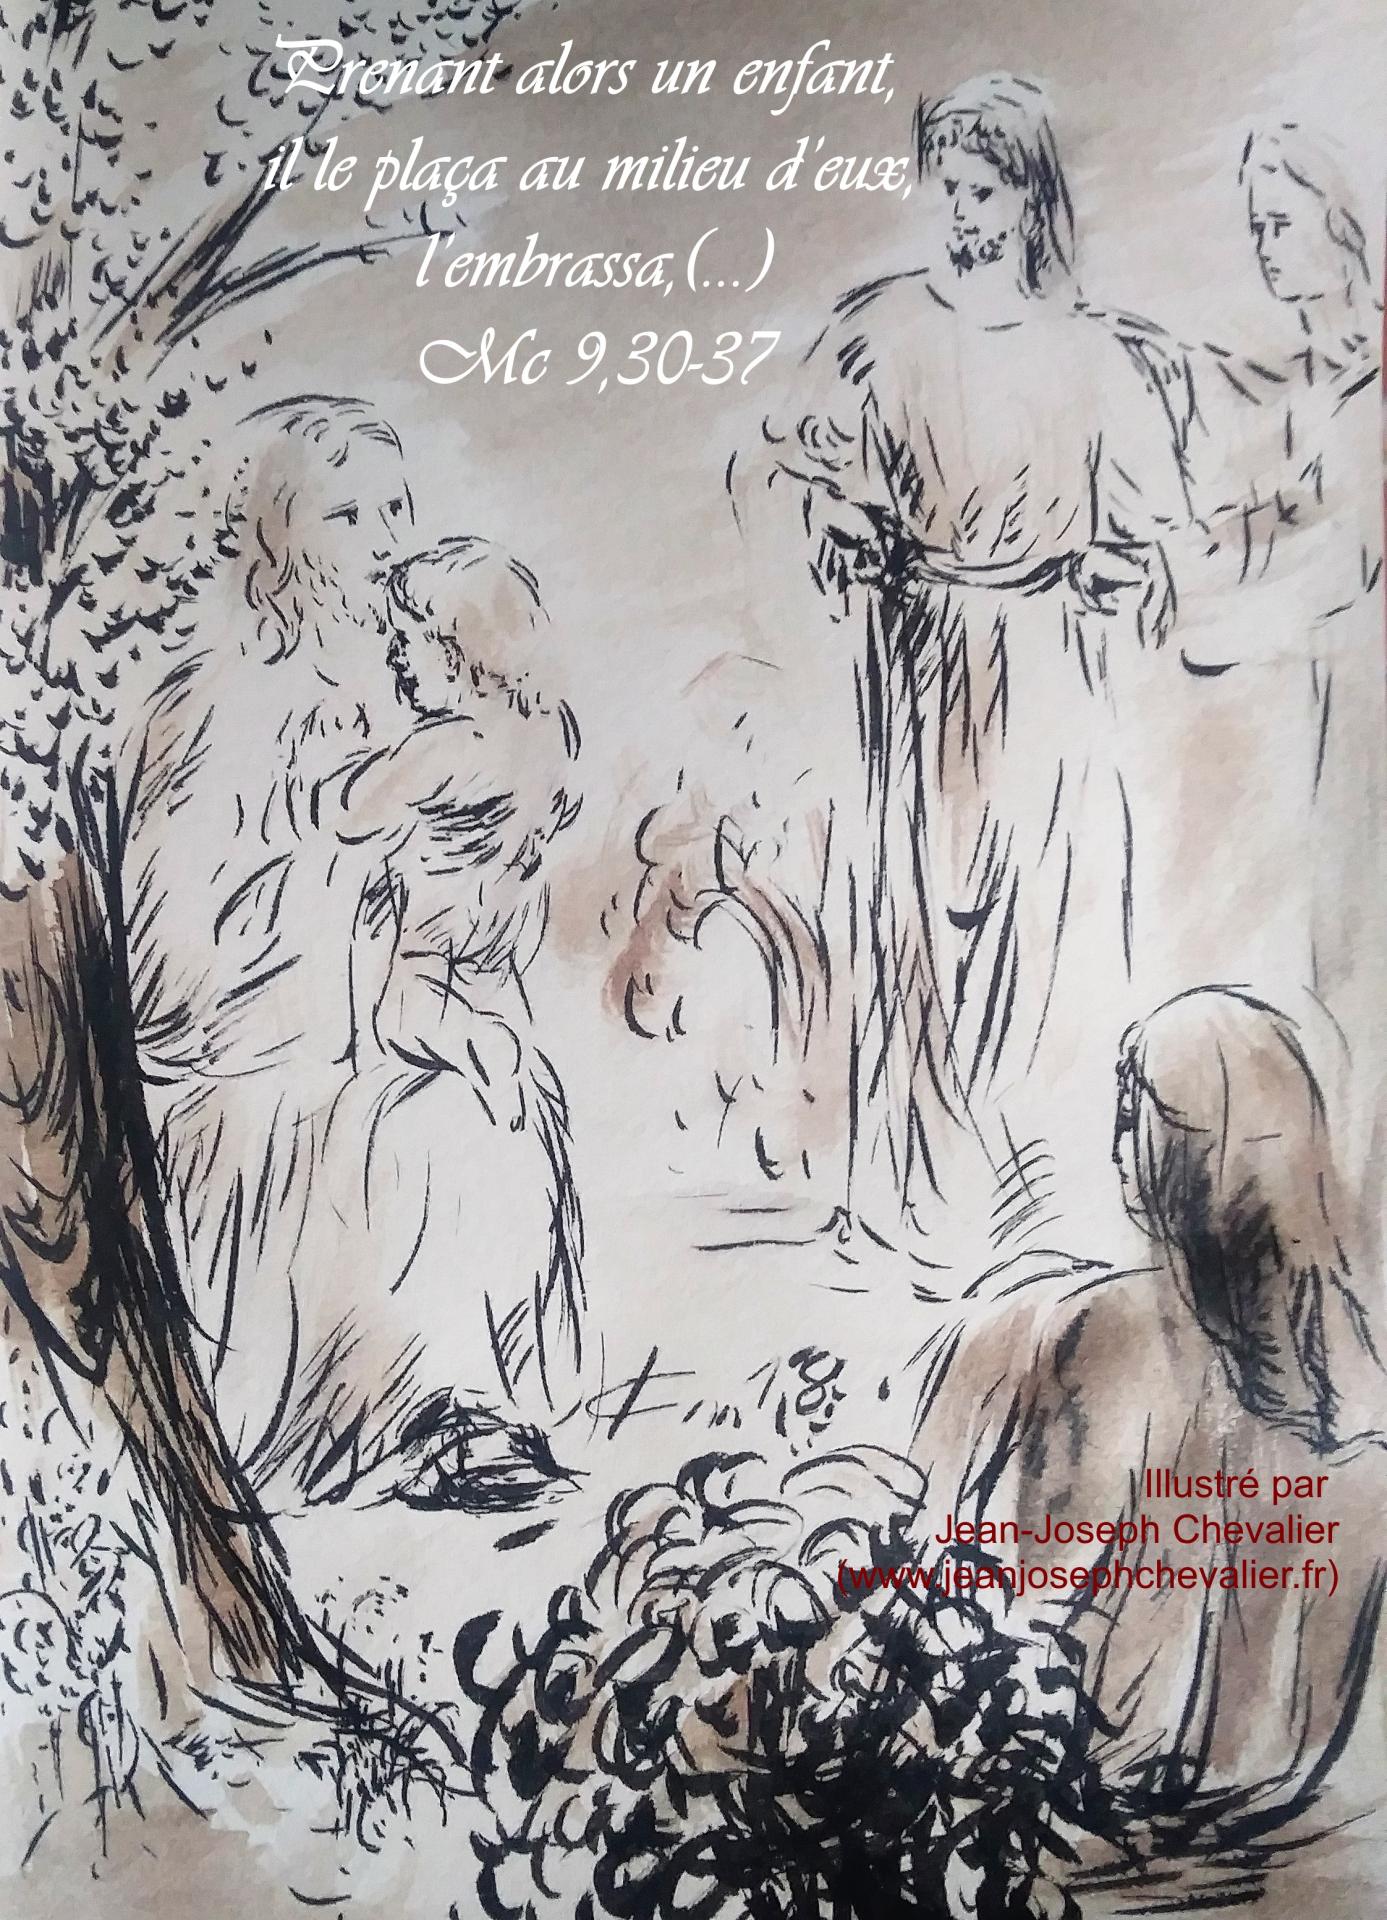 22 mai 2018 evangile du jour illustre par un dessin au lavis de jean joseph chevalier image